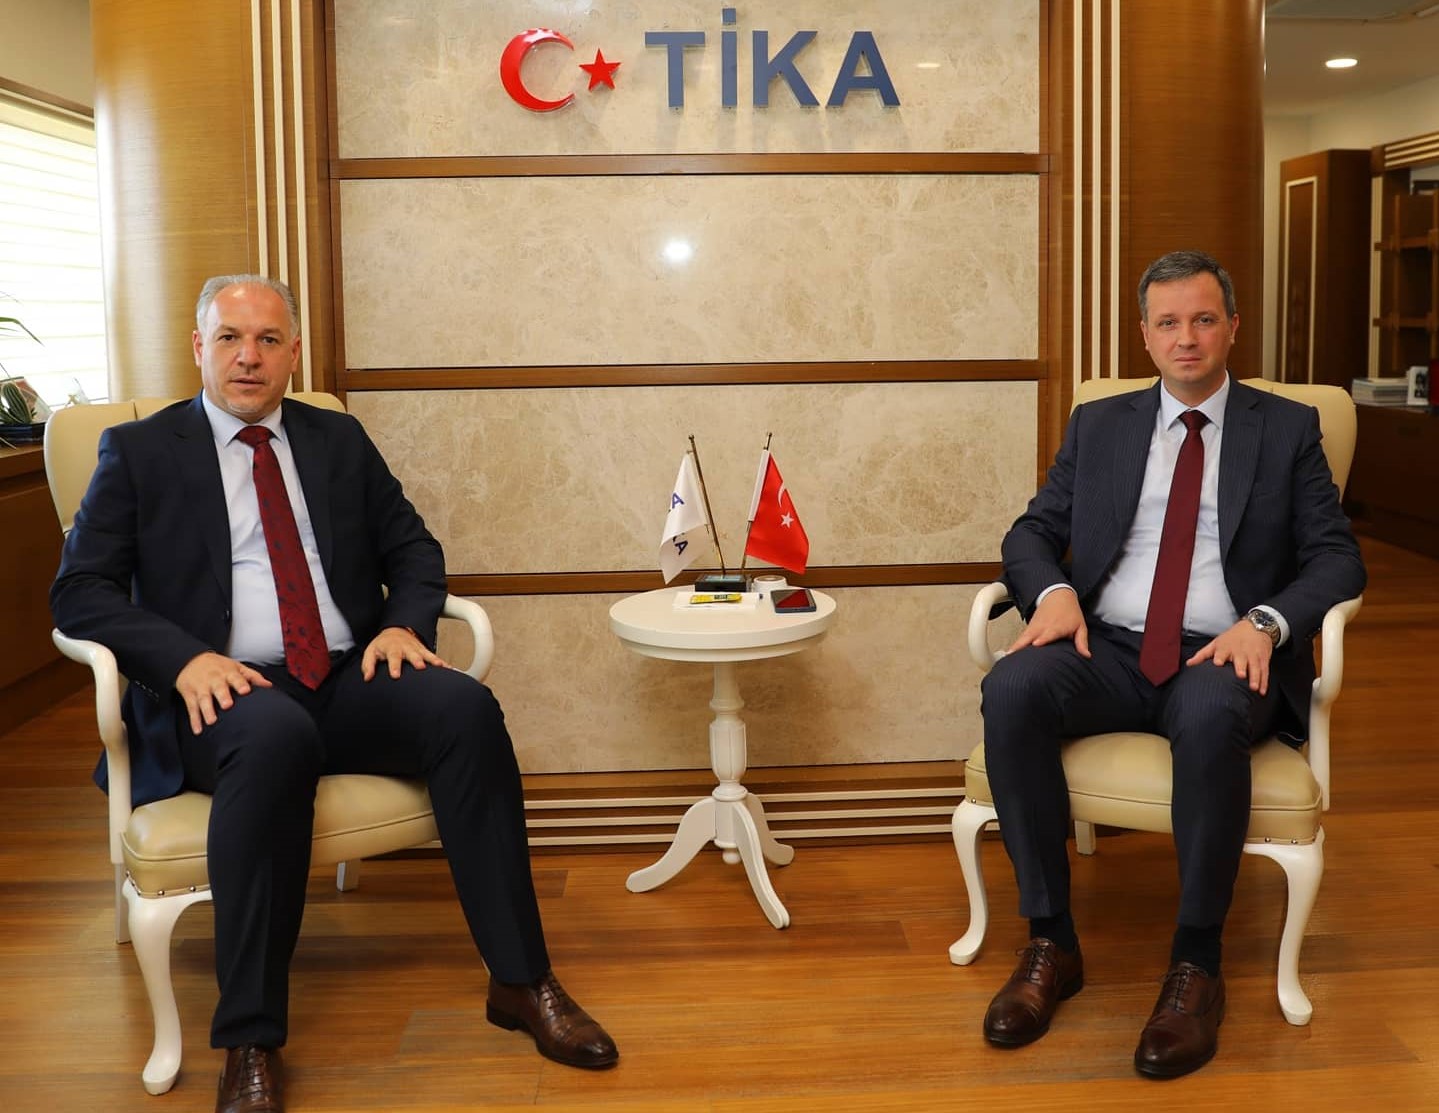 Ministri i Zhvillimit Rajonal z.Fikrim DAMKA si dhe z. Ergin Bunjaku – Këshilltar i Ministrit Damka  u takuan me Presidentin e Agjencisë Turke të Bashkëpunimit dhe Koordinimit (TIKA) z,Serkan KAYALAR, takim i realizuar gjatë qëndrimit së vizitës së tyre zyrtare në Ankara